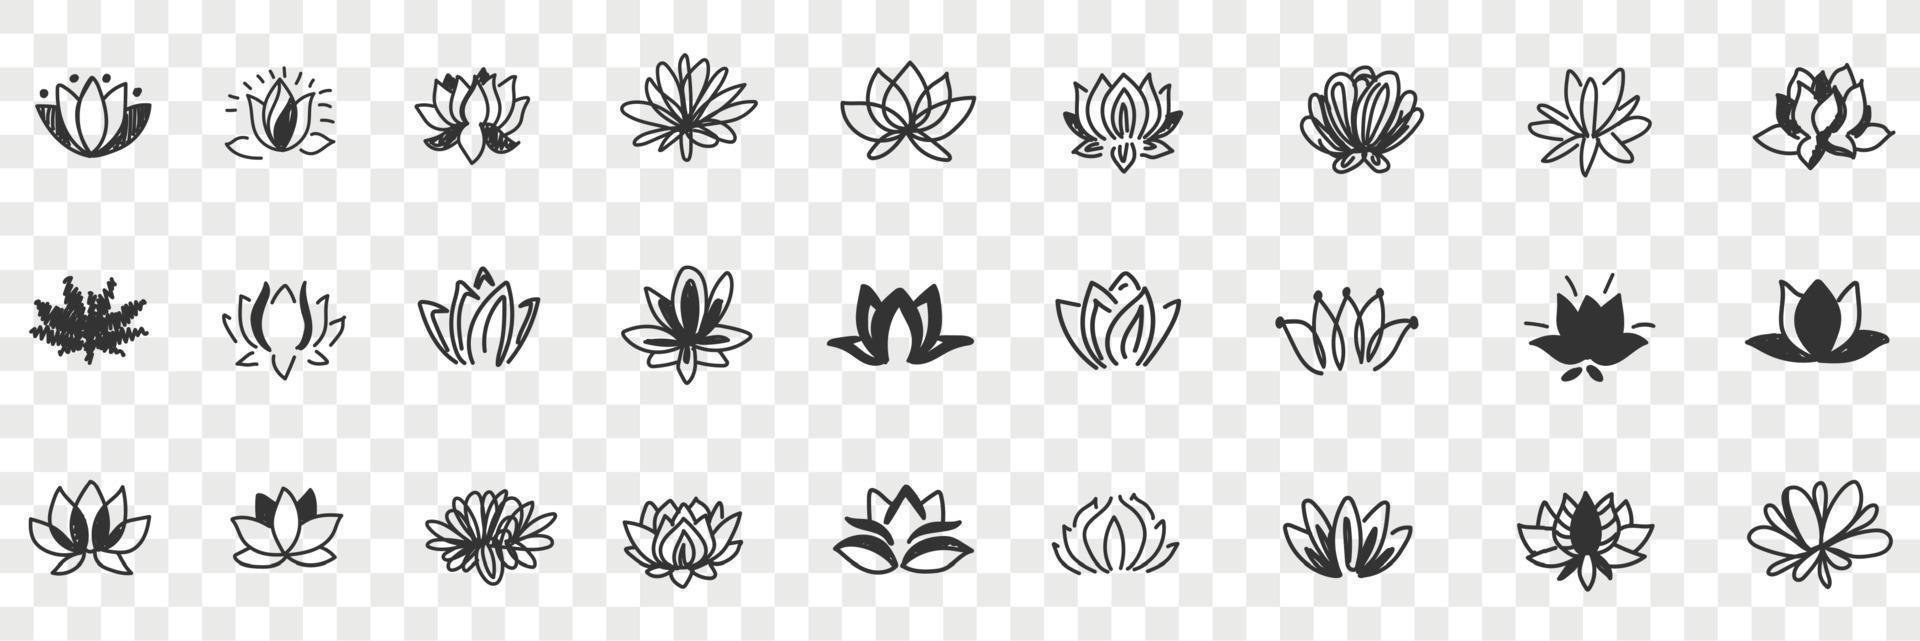 Lotus Blumen Muster Gekritzel Satz. Sammlung von Hand gezeichnet natürlich Blumen- Muster von Blühen Lotus Blumen im Reihen isoliert auf transparent Hintergrund vektor